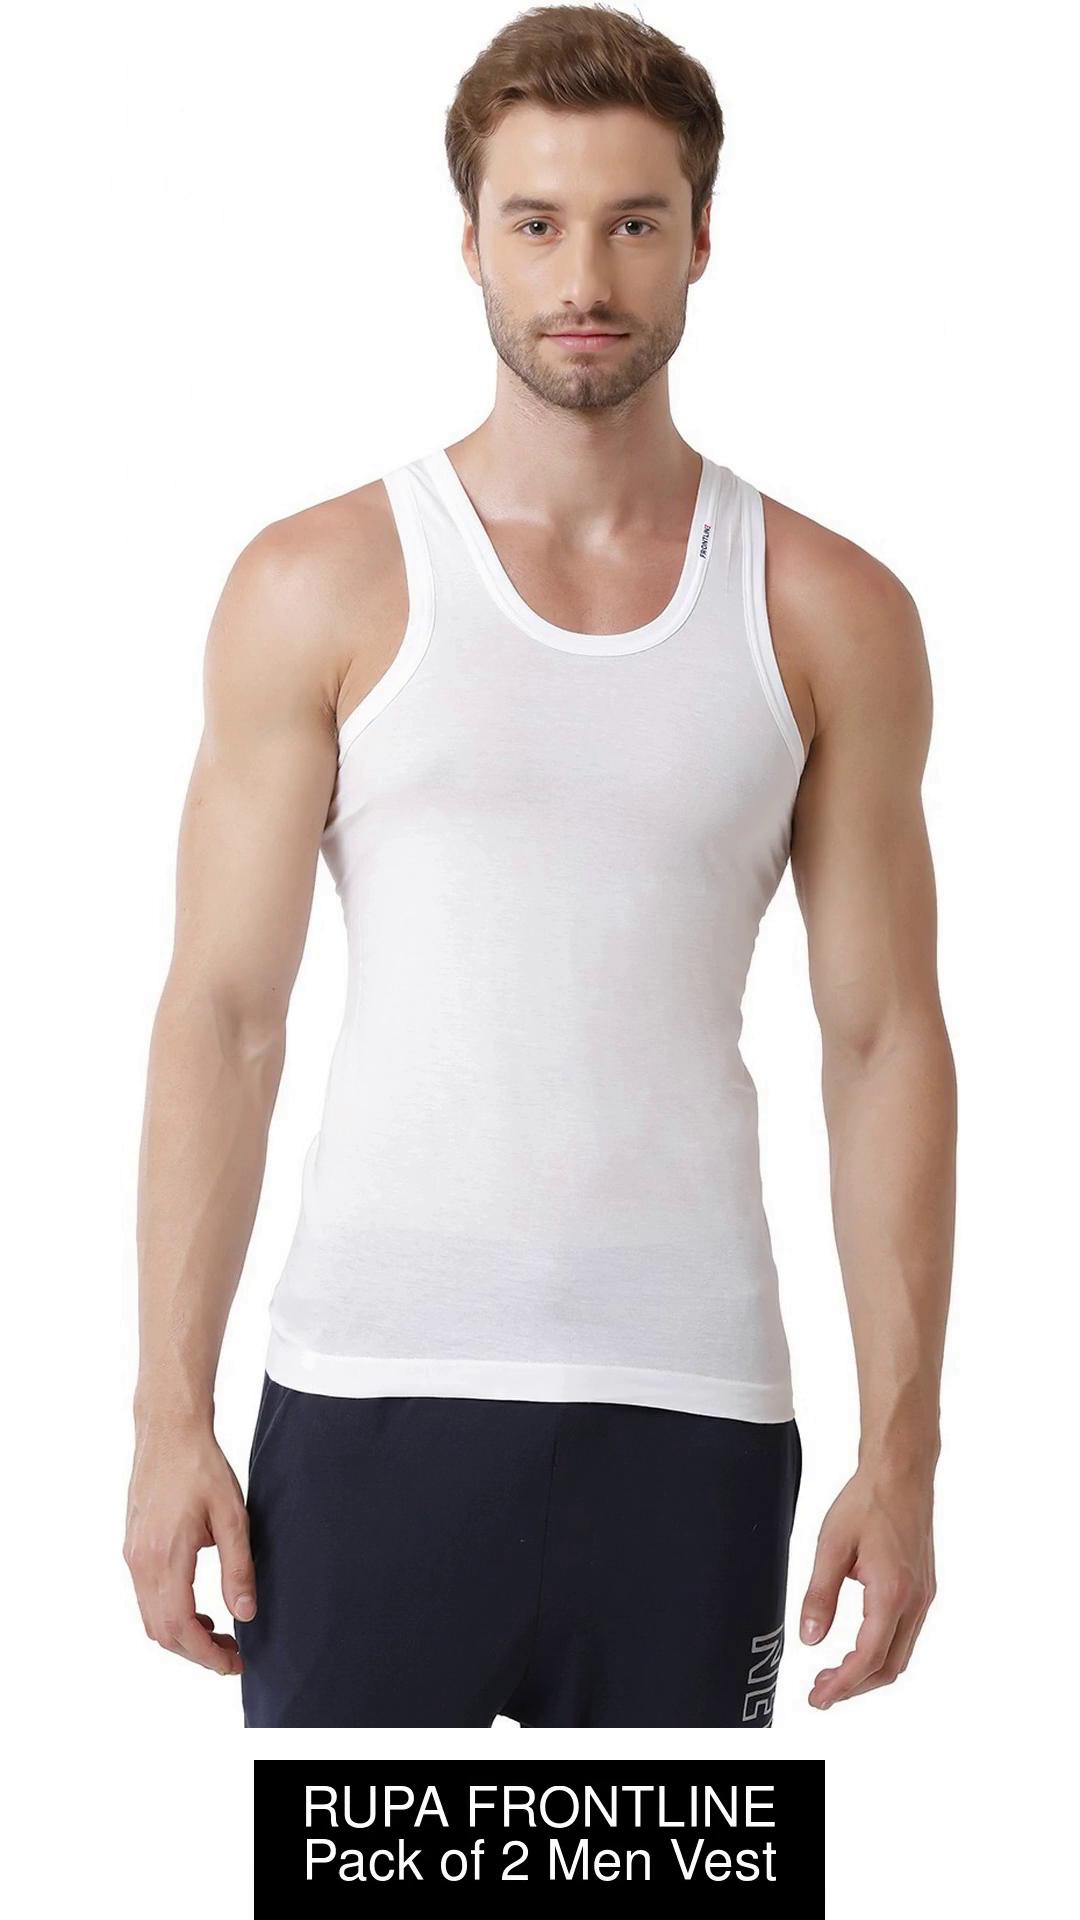 Rupa Frontline Innerwear Vests - Buy Rupa Frontline Innerwear